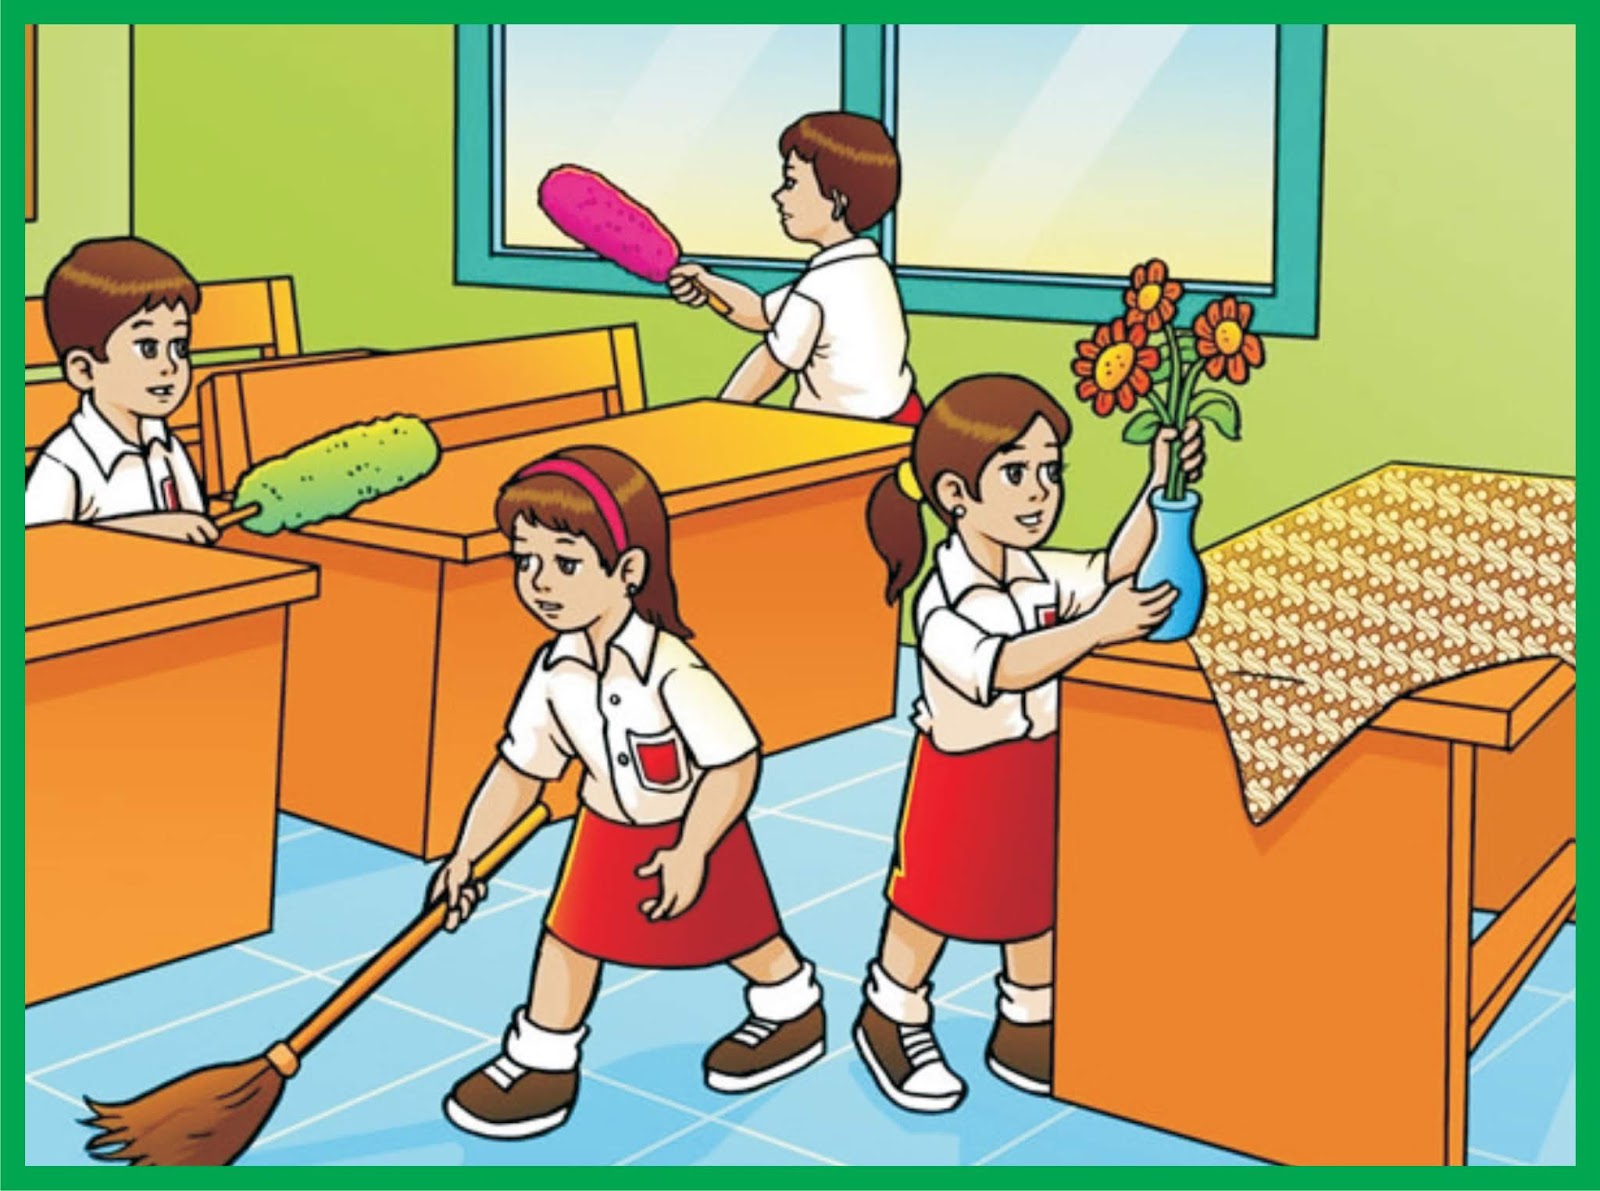 Kebersihan lingkungan sekolah adalah 